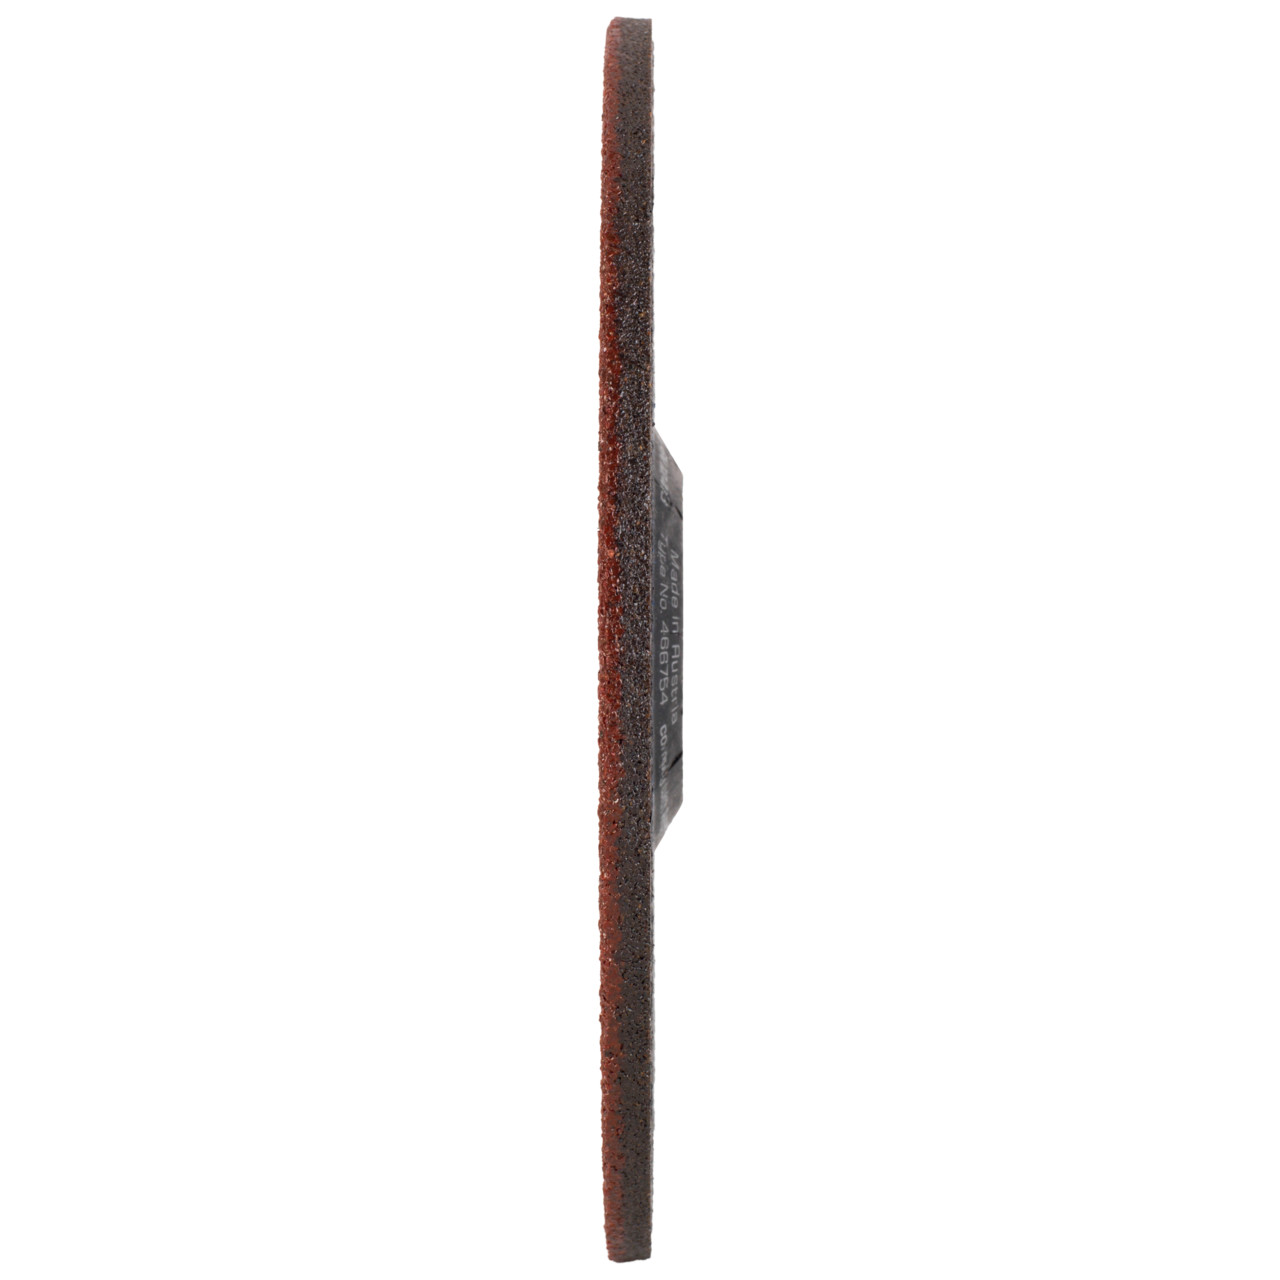 TYROLIT slijpschijf DxUxH 230x7x22,23 3in1 voor staal en roestvrij staal en gietijzer, vorm: 27 - offset-uitvoering, Art. 466762